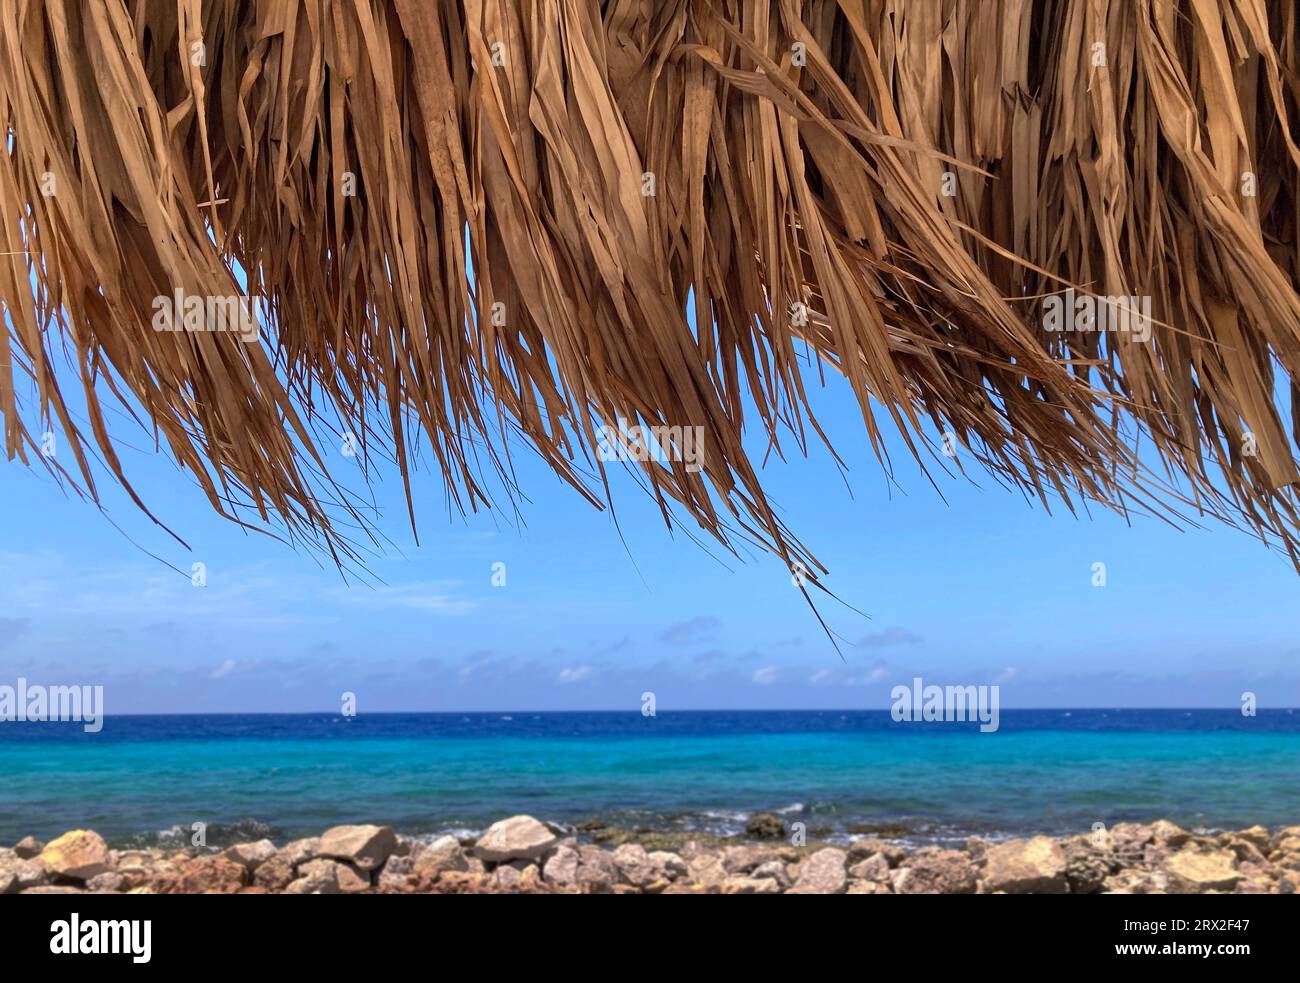 Palmenwedel mit Strohdach, die in der Brise mit dem karibischen Meer wehen, Curacao Stockfoto